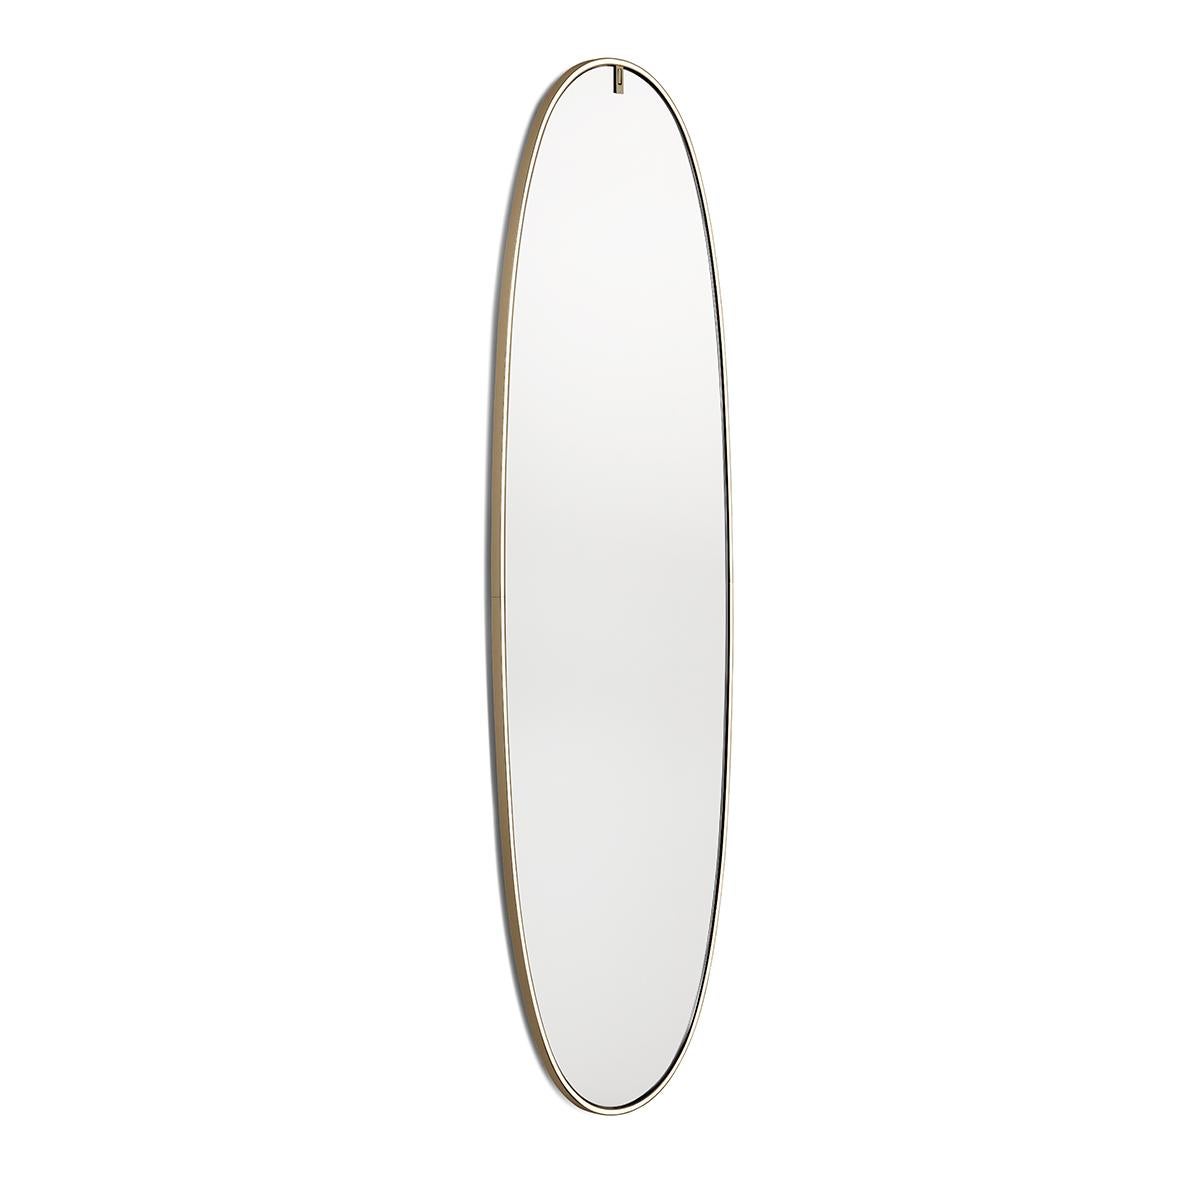 La Plus Belle ist ein Spiegel mit eingebauten Lichtquellen. Der Aluminiumrahmen ist in verschiedenen Ausführungen erhältlich (poliertes Gold, poliertes Kupfer, polierte Bronze und Aluminium) und beherbergt LED-Lichtquellen mit hoher Farbwiedergabe